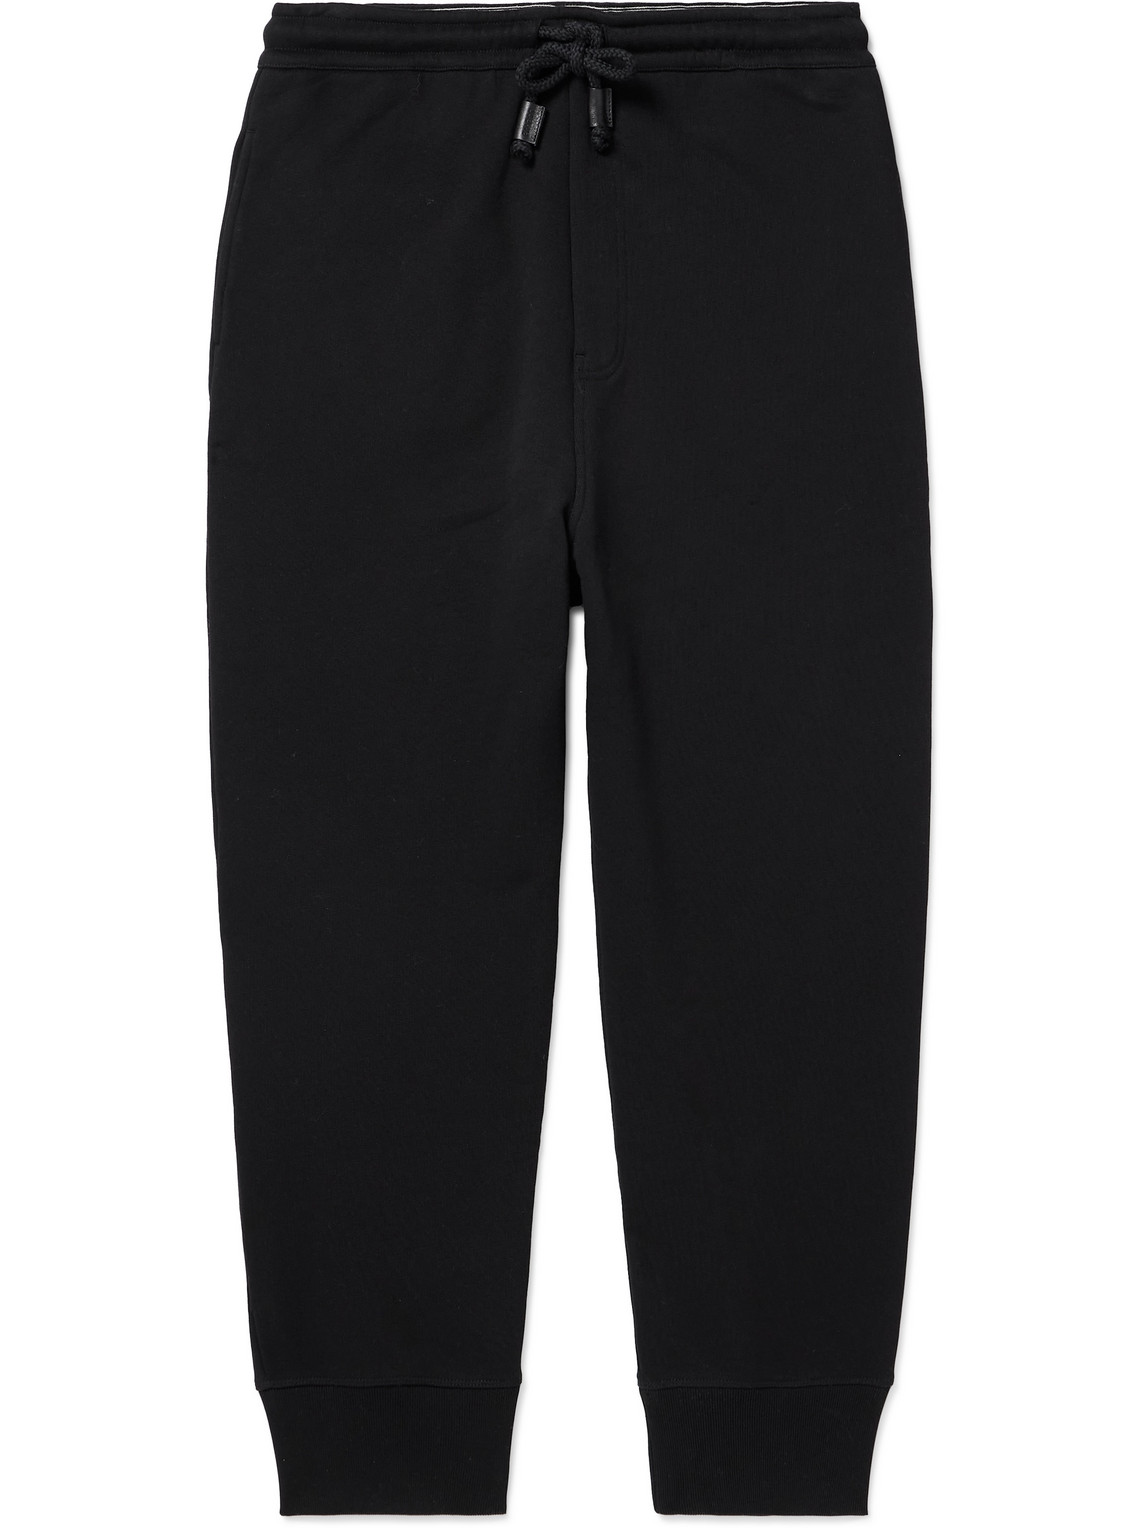 LOEWE - Tapered Cotton-Jersey Sweatpants - Men - Black - XS von LOEWE